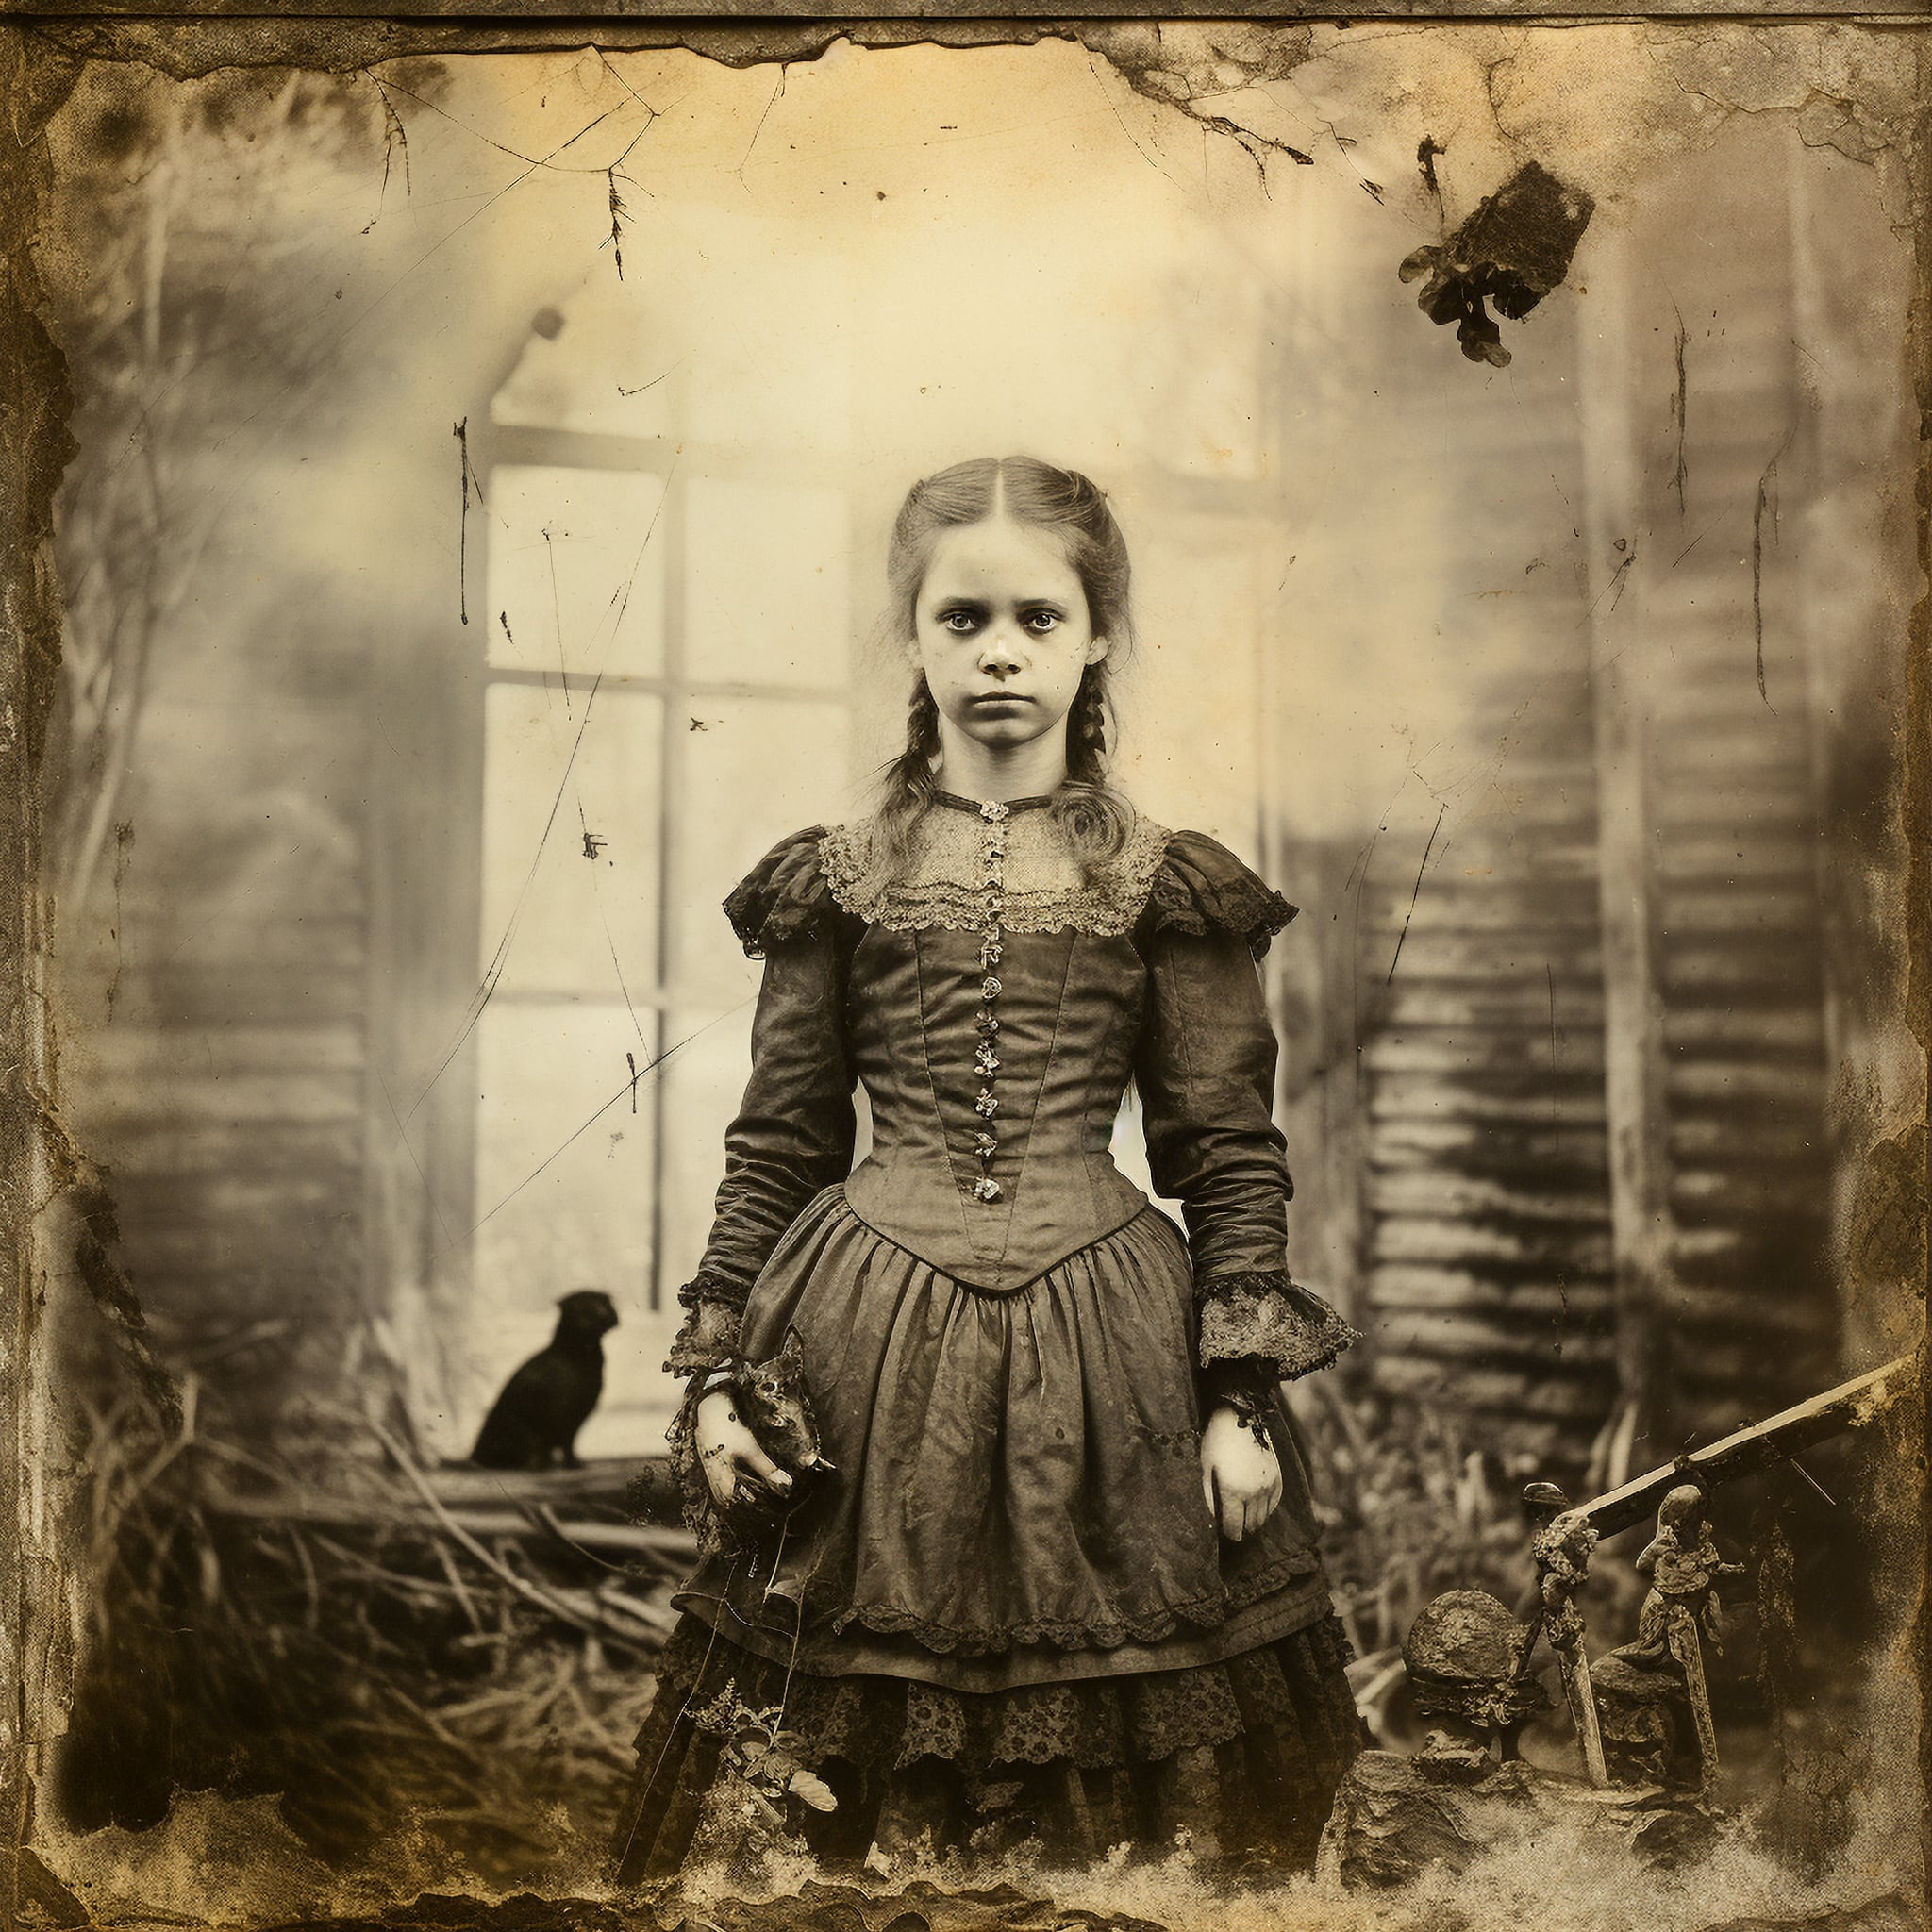 Photographie sepia d'une jeune fille, obtenue selon un procédé caractéristique des portraits anciens.